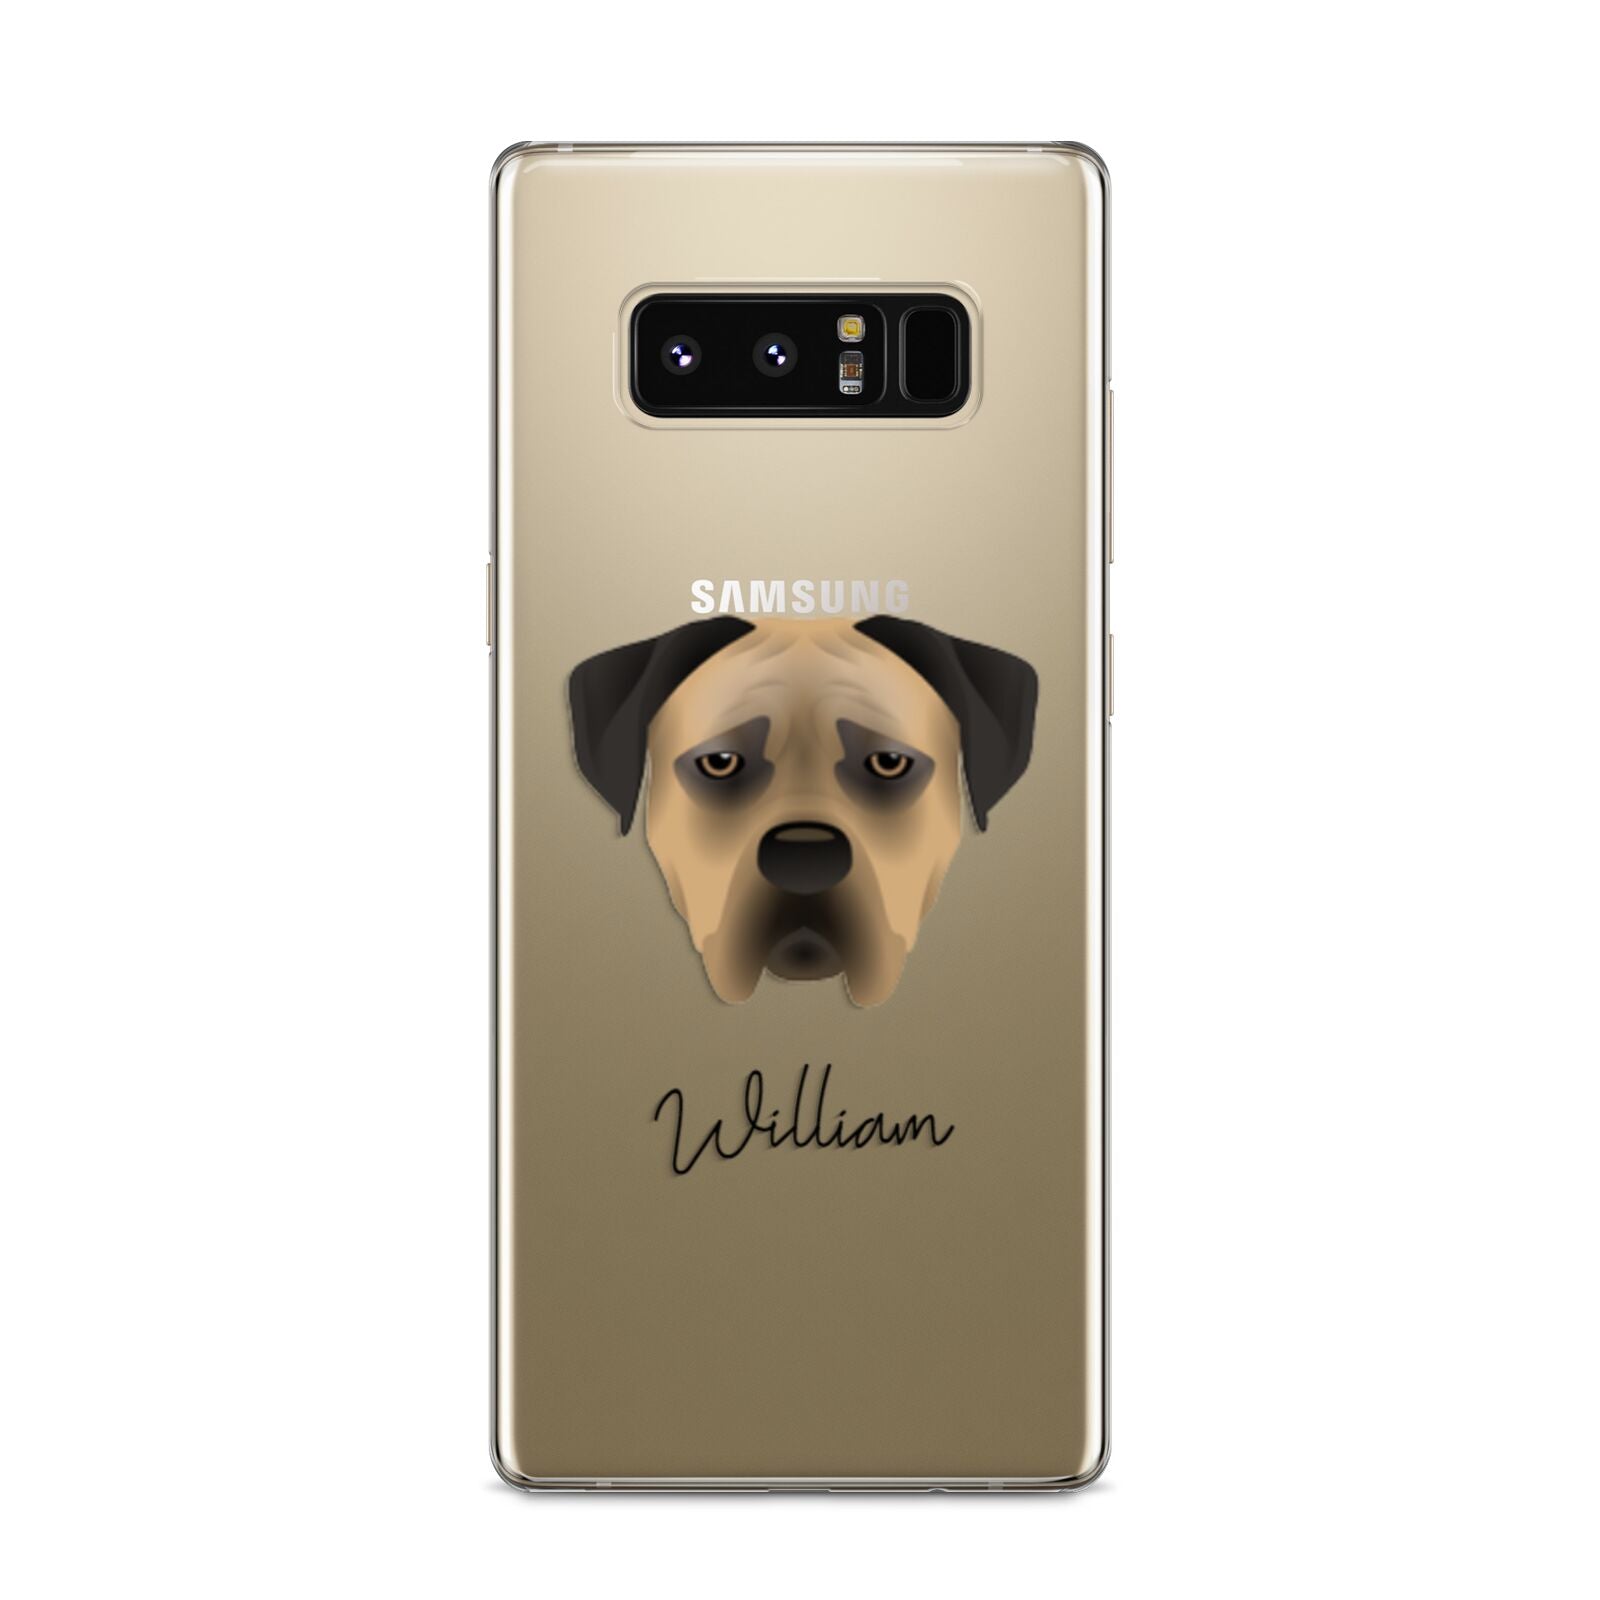 Boerboel Personalised Samsung Galaxy S8 Case